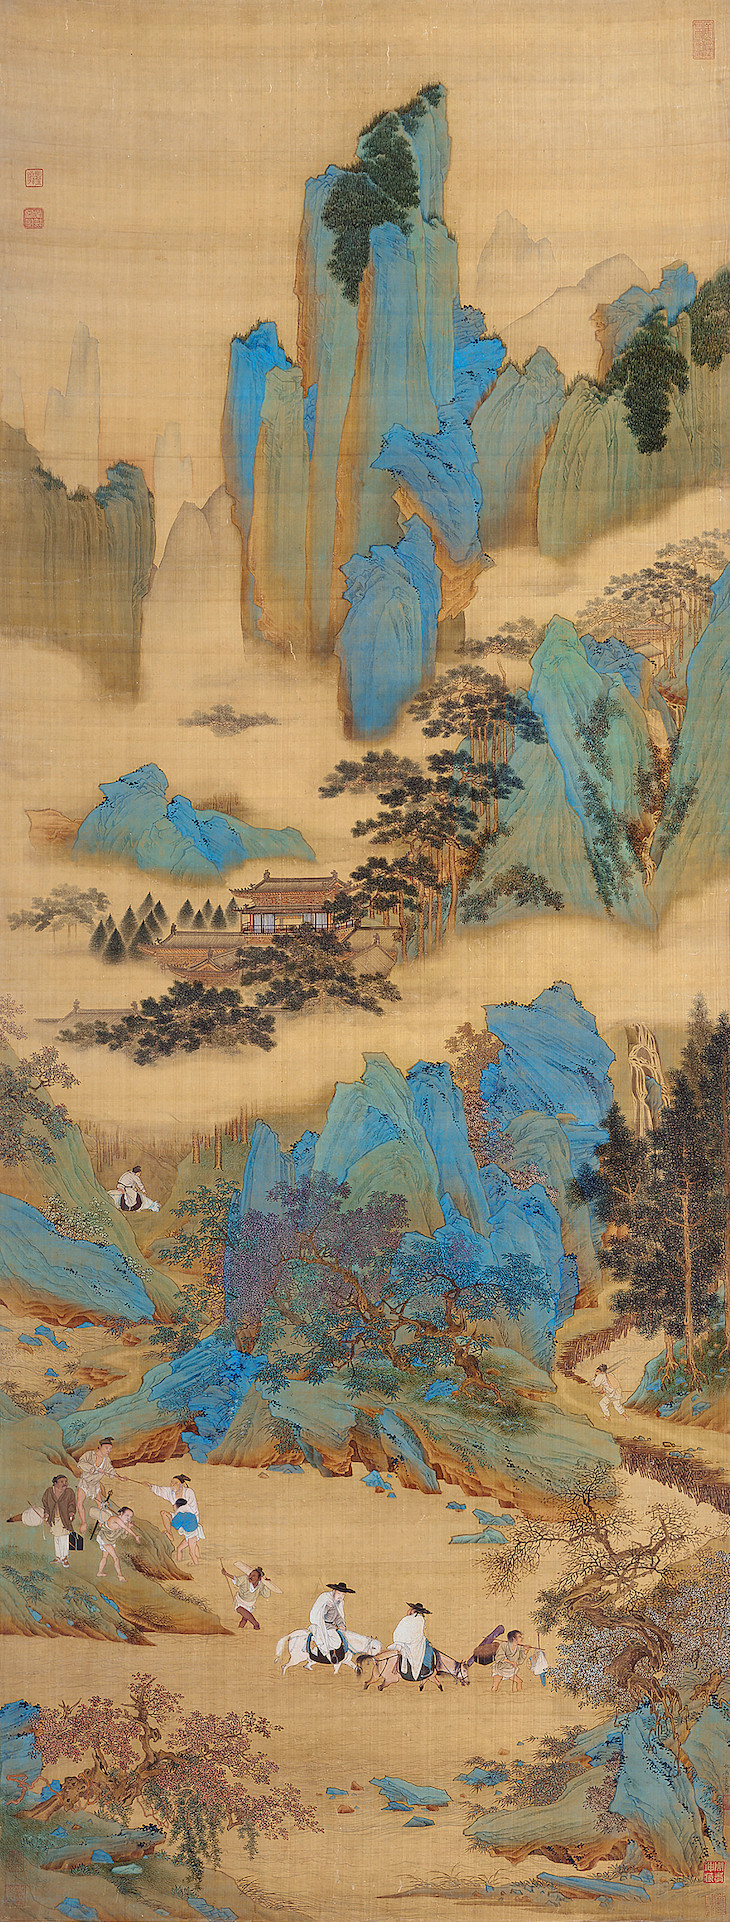 The Emperor Guangwu Fording a River (c. 1534–42), Qiu Ying. 